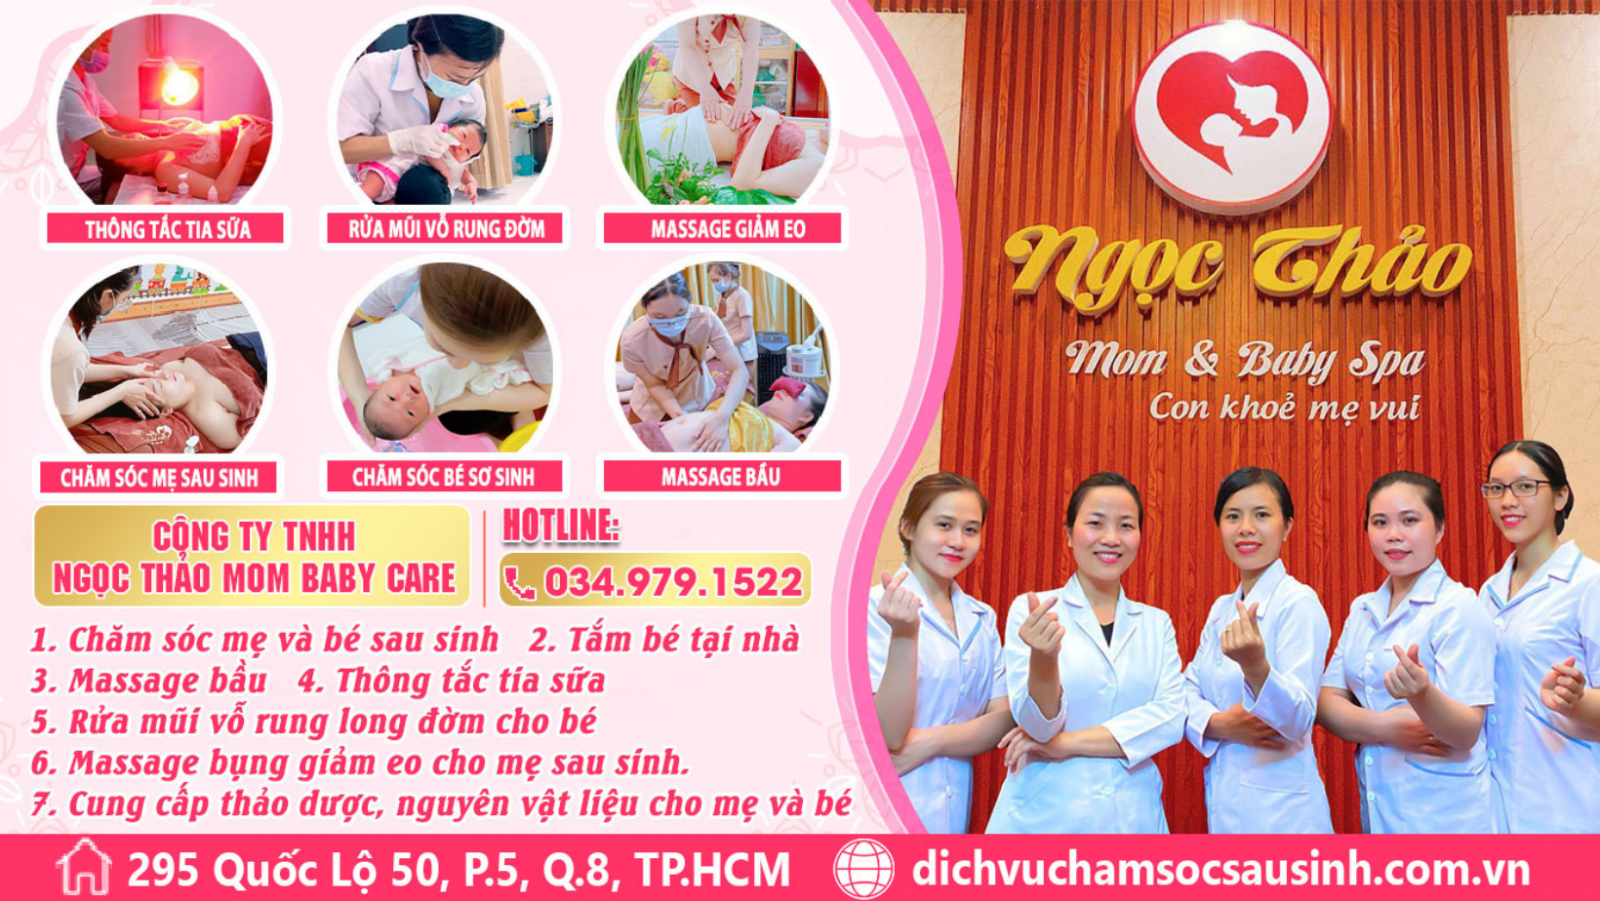 Trung tâm đào tạo thực hành nghề chăm sóc mẹ và bé Ngọc Thảo Mom Baby Care chất lượng hàng đầu